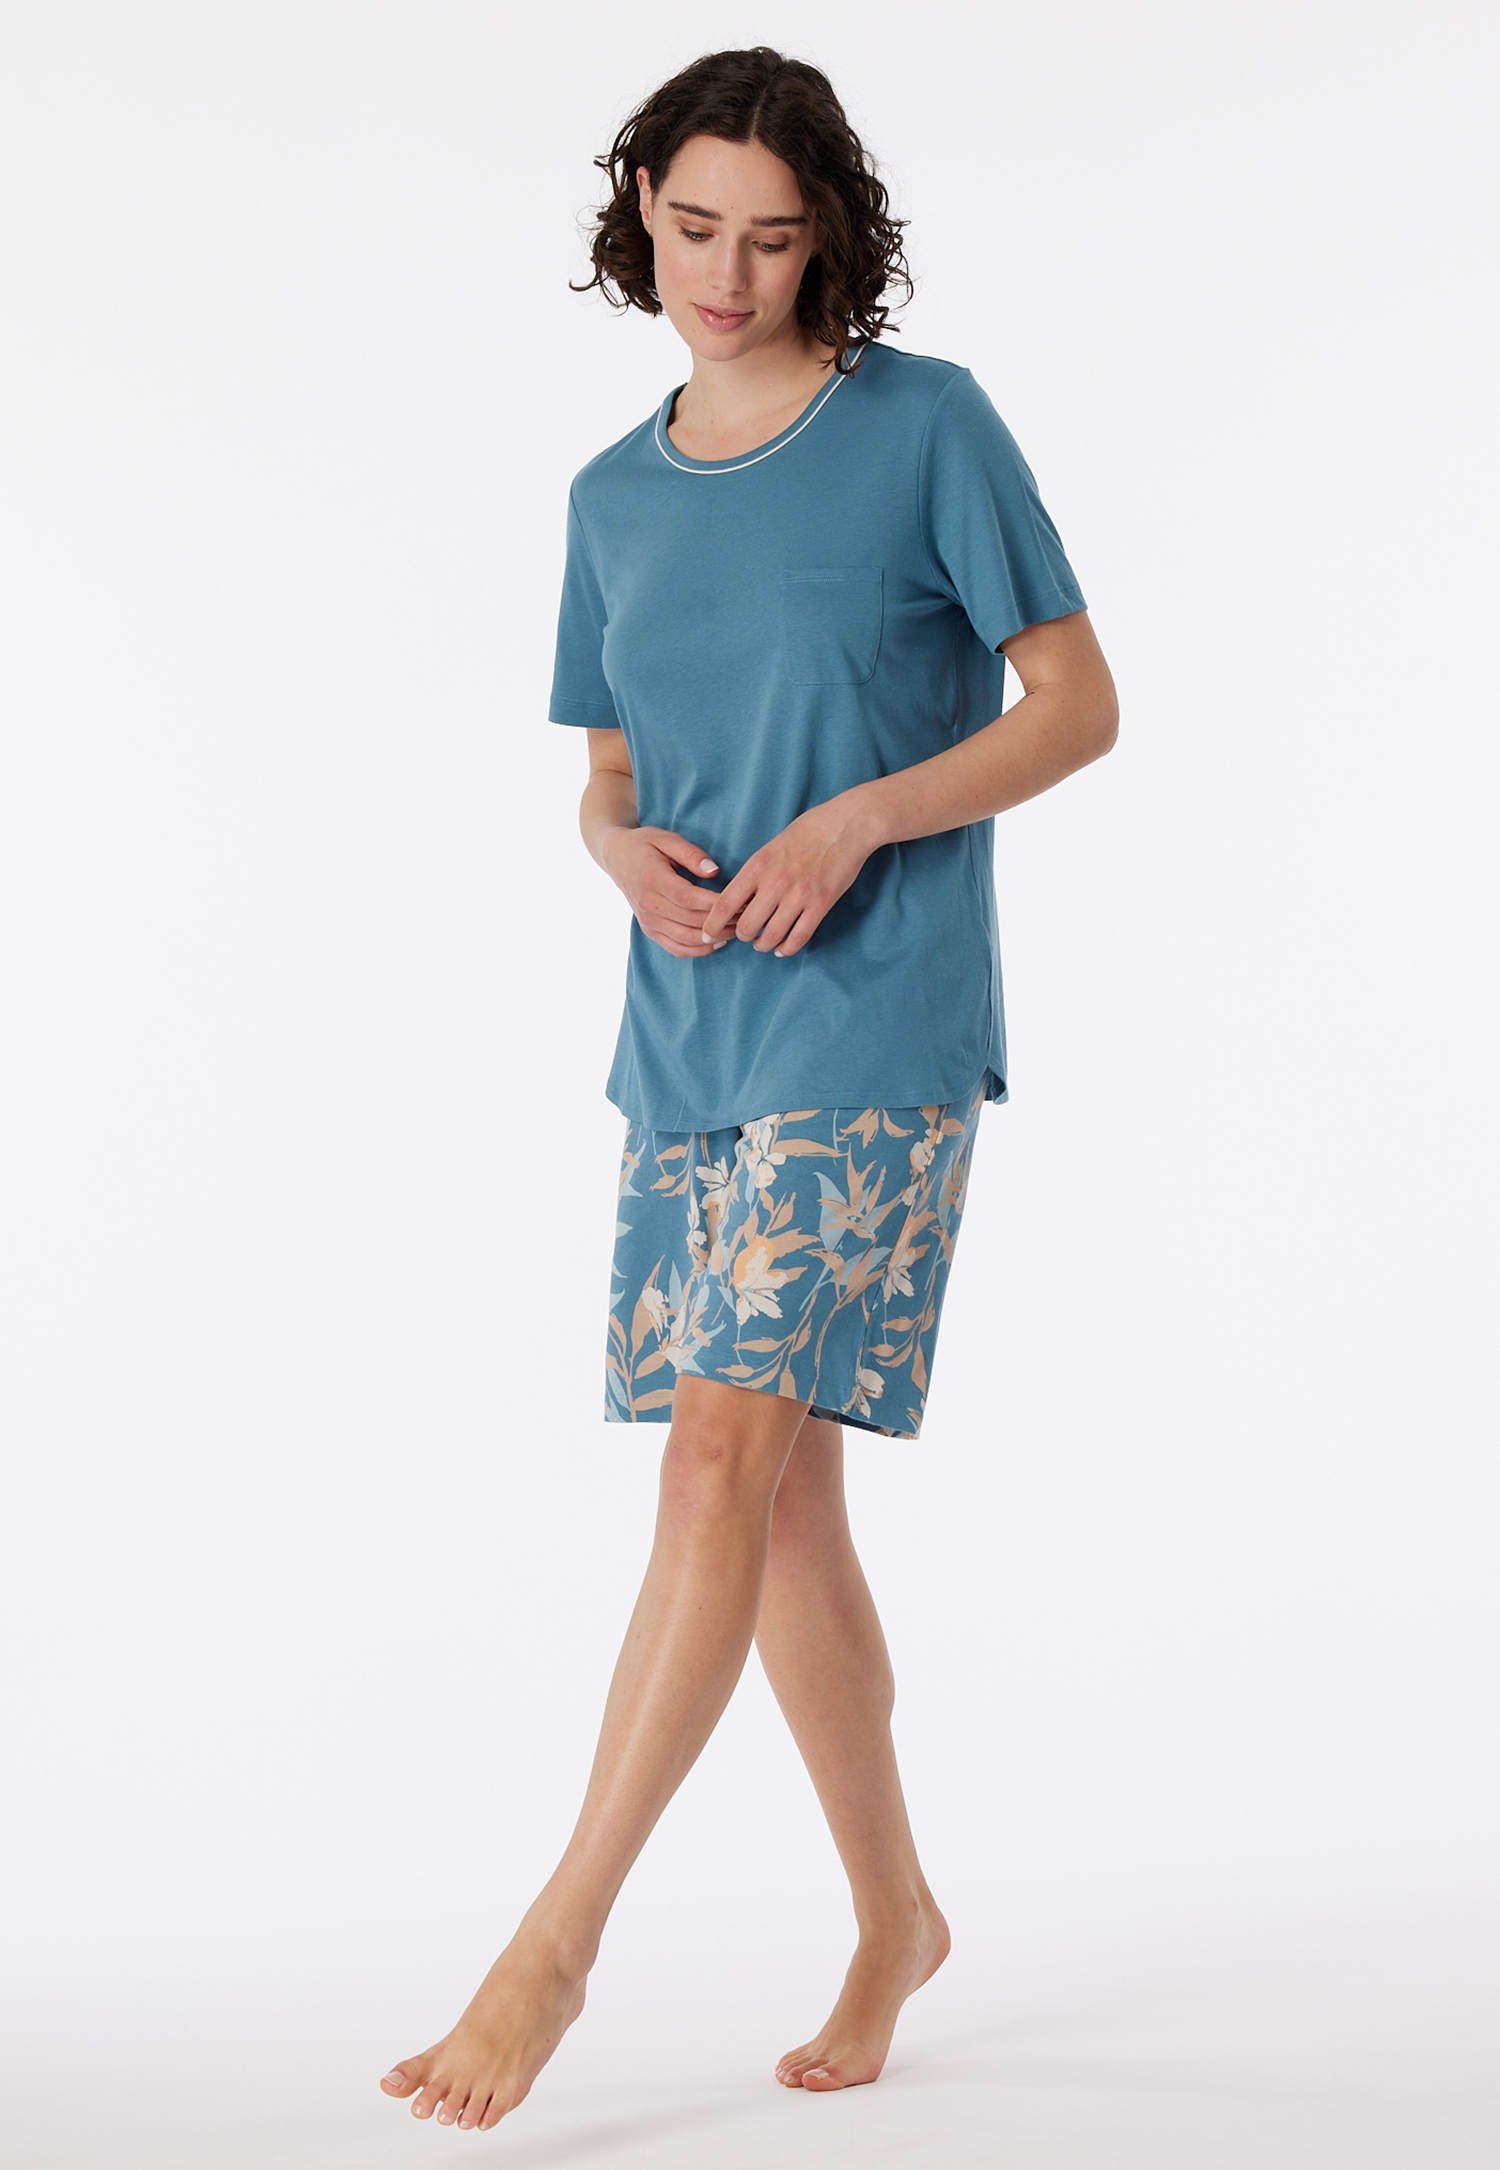 Schlafanzug kurz blaugrau - Comfort Nightwear 38 von Schiesser